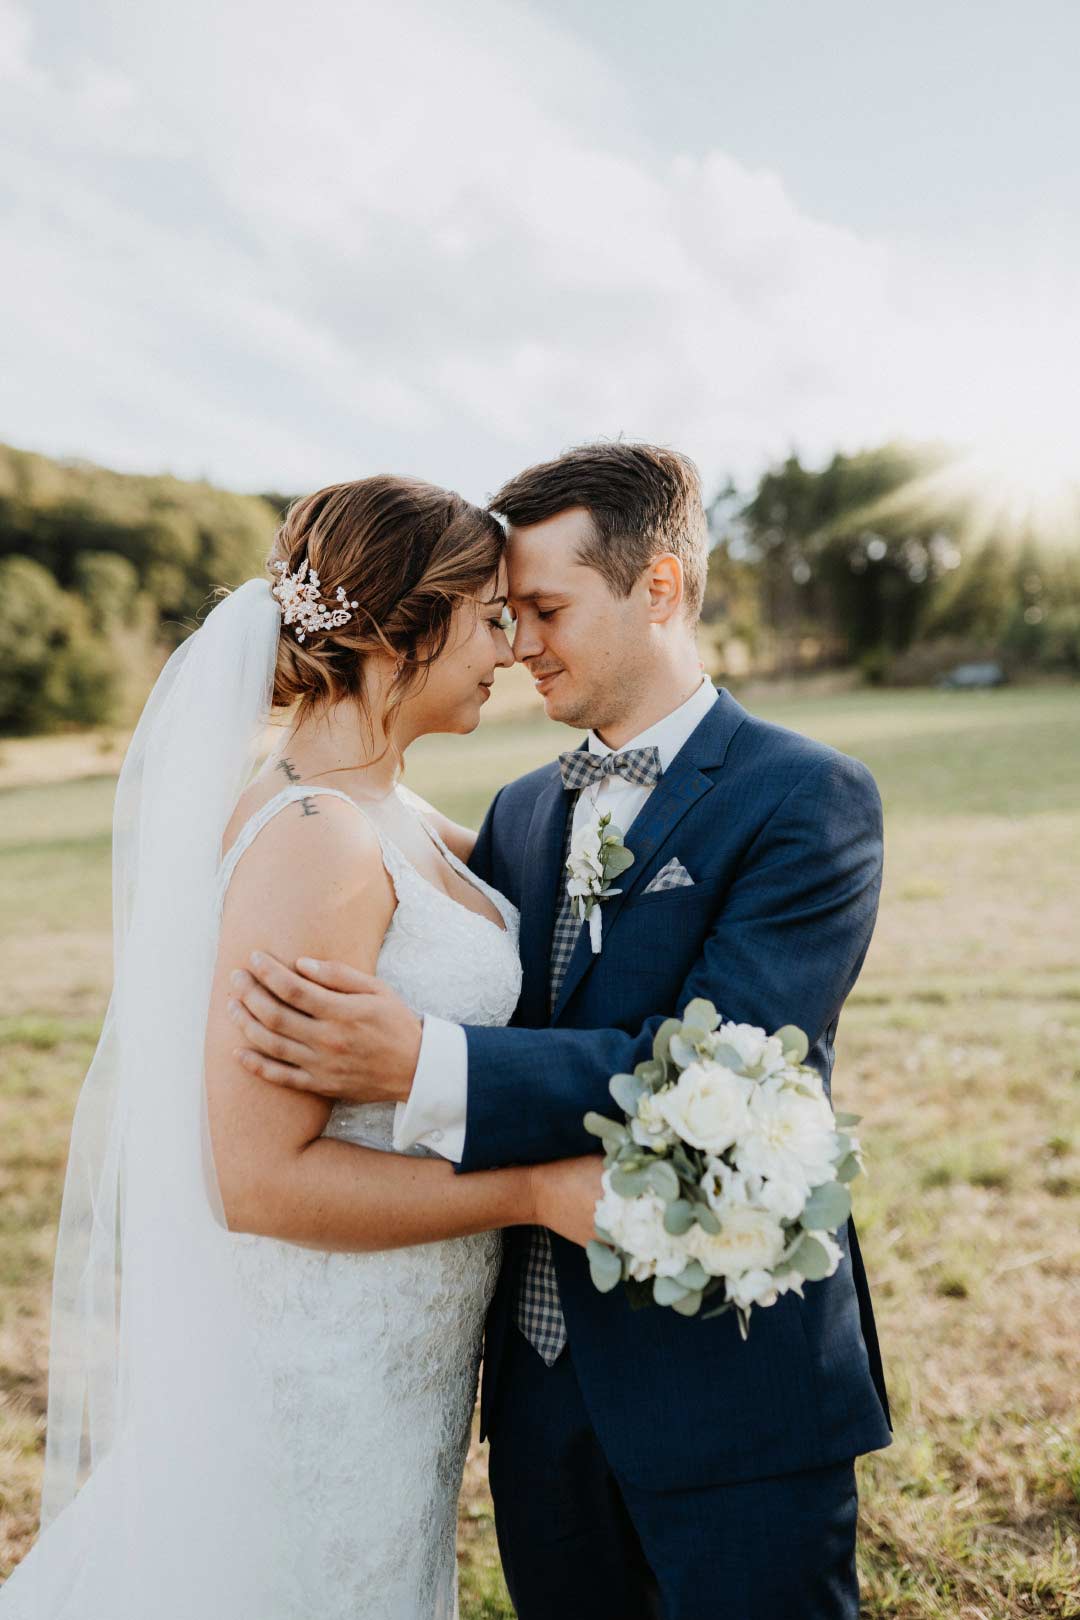 Paar-Fotoshooting bei der Hochzeit in Roségold, weiß und viel Greenery